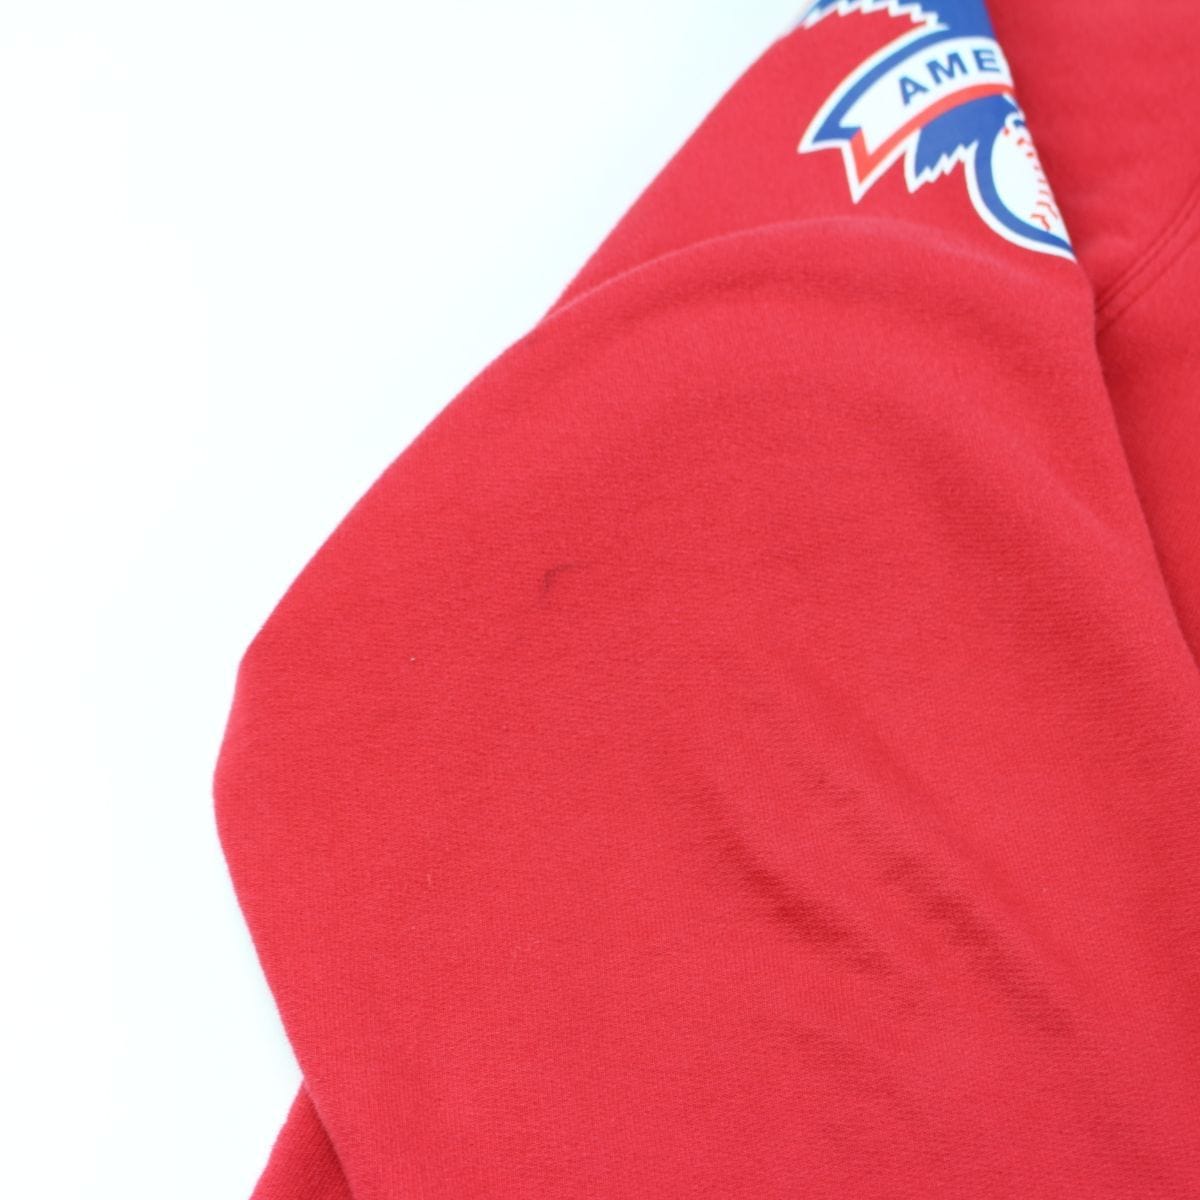 supreme x new york yankees hoodie red 2015 - SaruGeneral